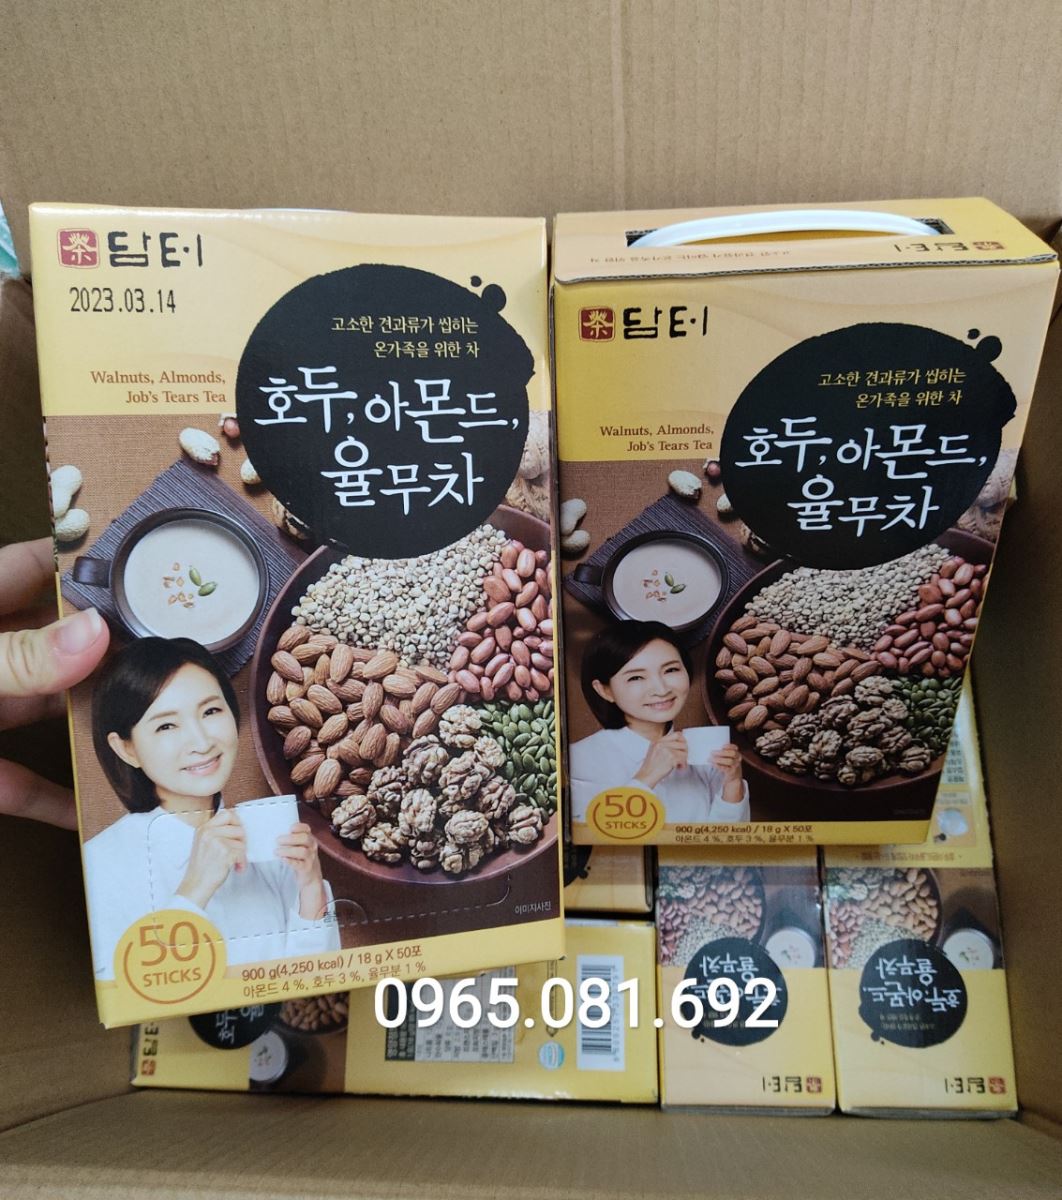 Bột ngũ cốc dinh dưỡng Damtuh Hàn Quốc